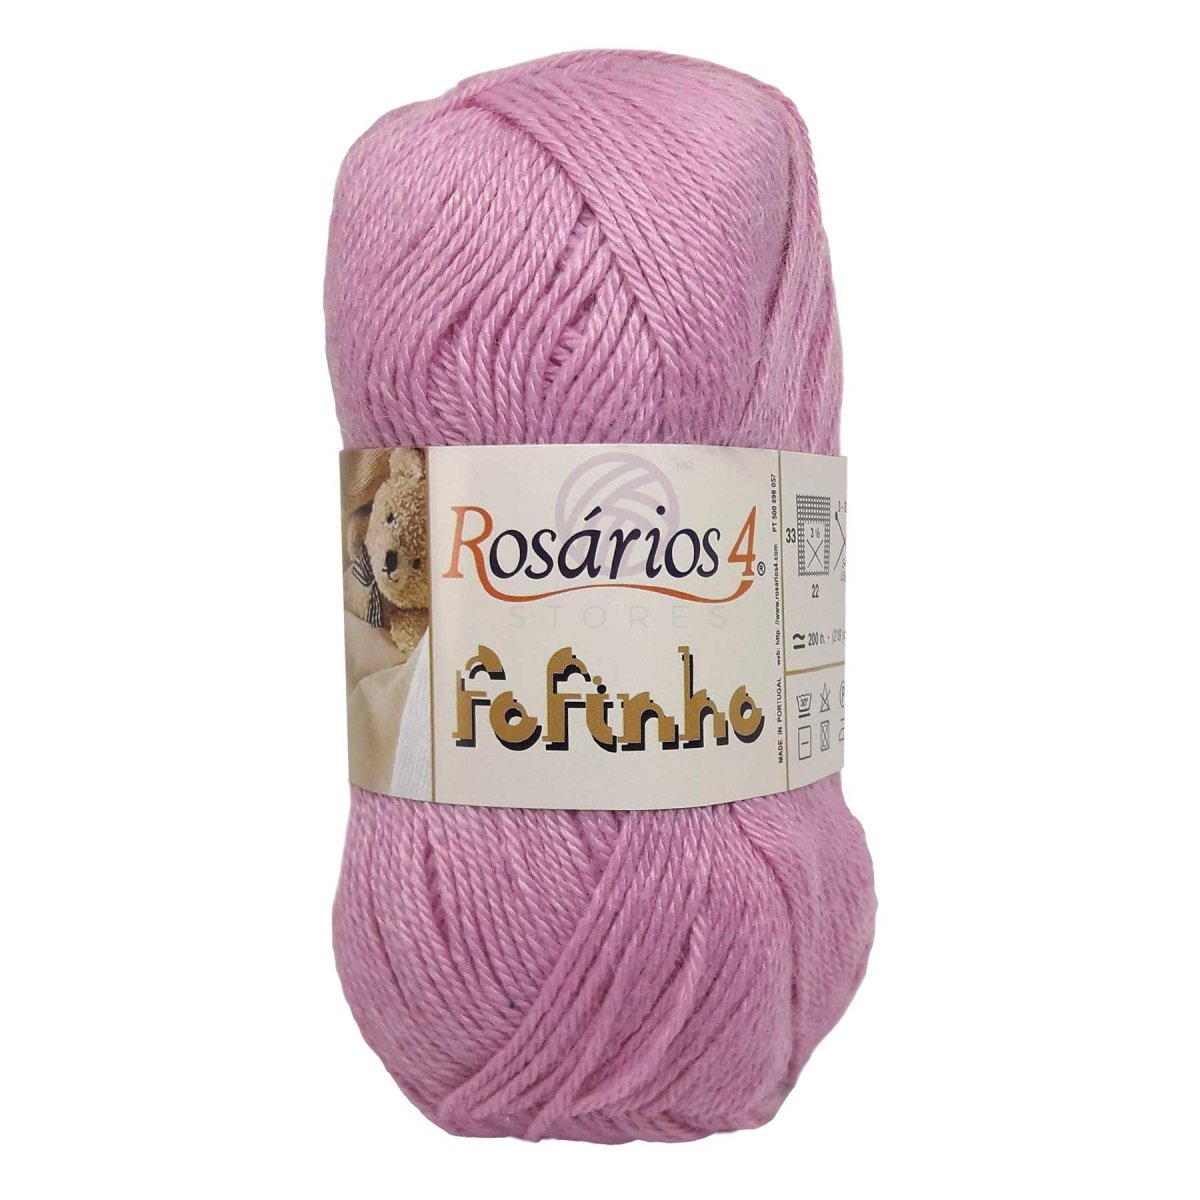 FOFINHO - Crochetstores441-155606850441151